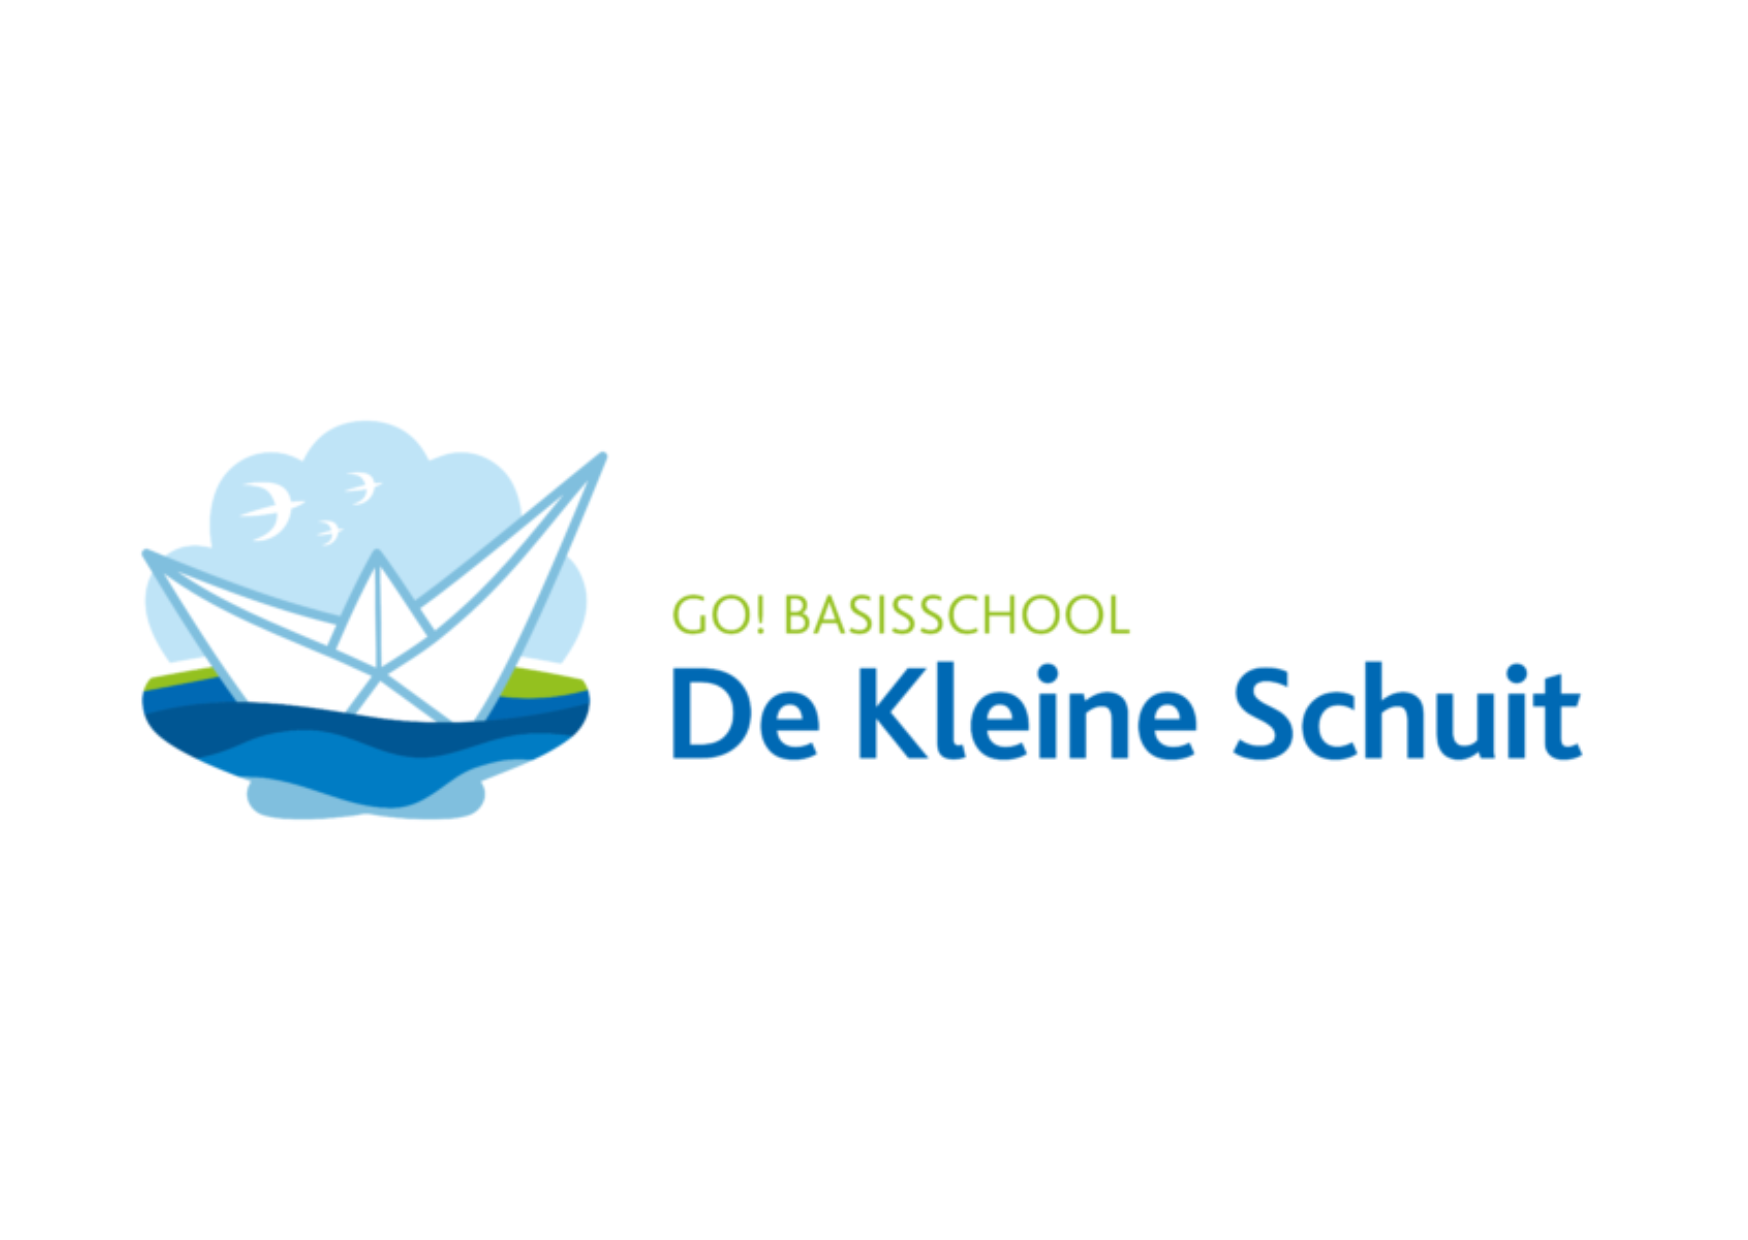 Schoolfeest GO! basisschool De Kleine Schuit